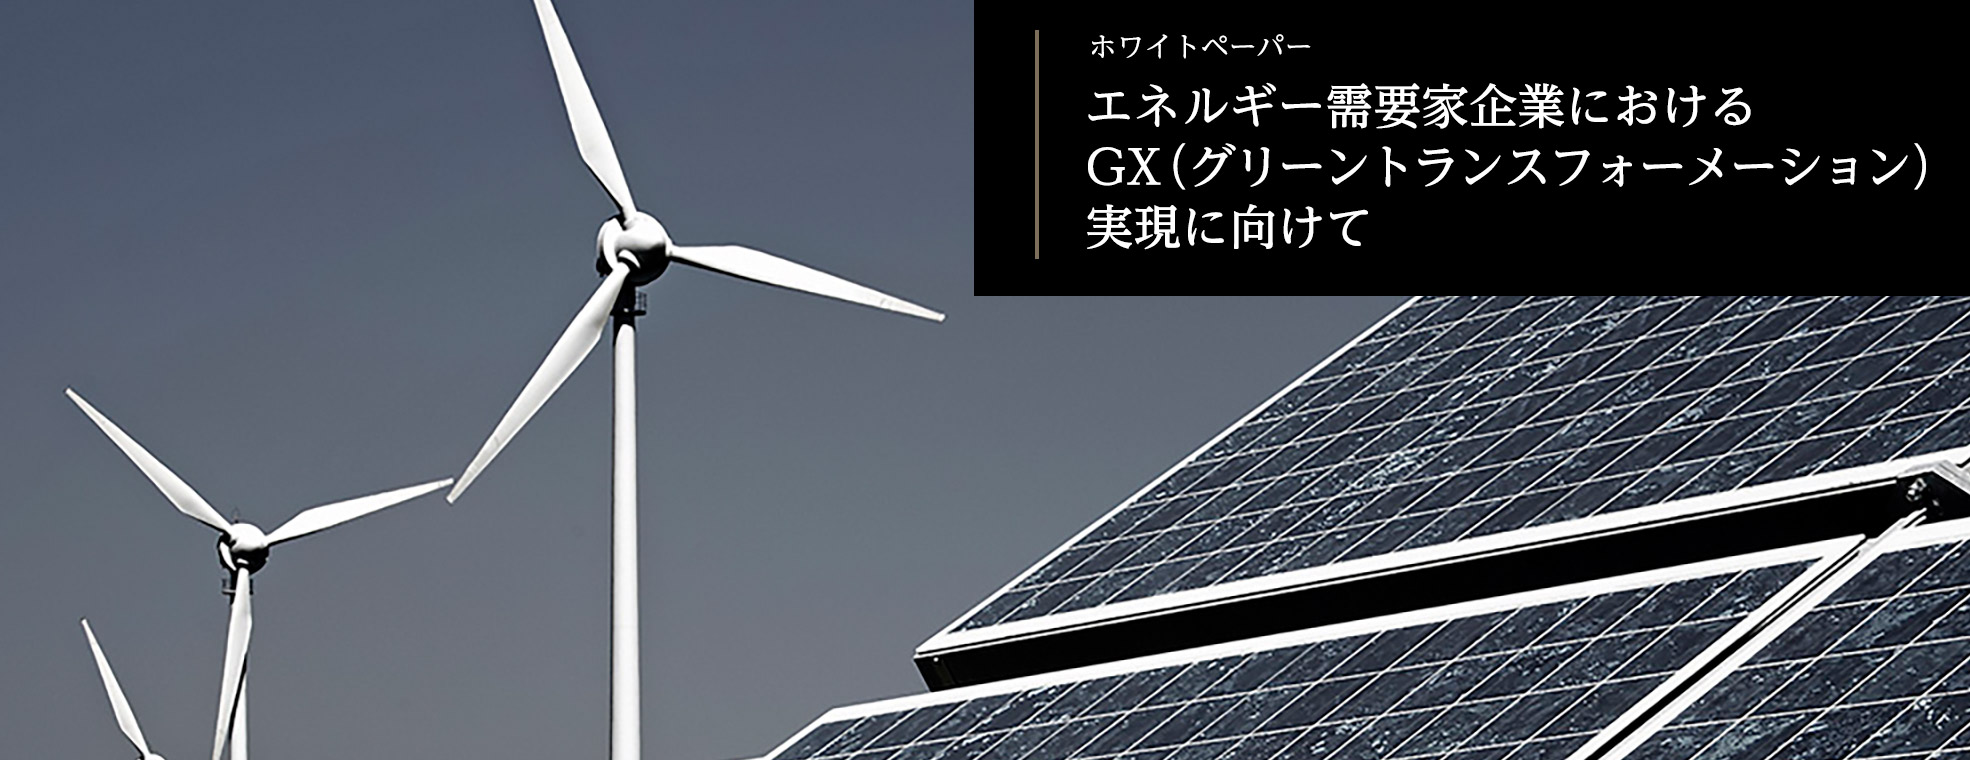 エネルギー需要家企業におけるGX（グリーントランスフォーメーション）実現に向けて